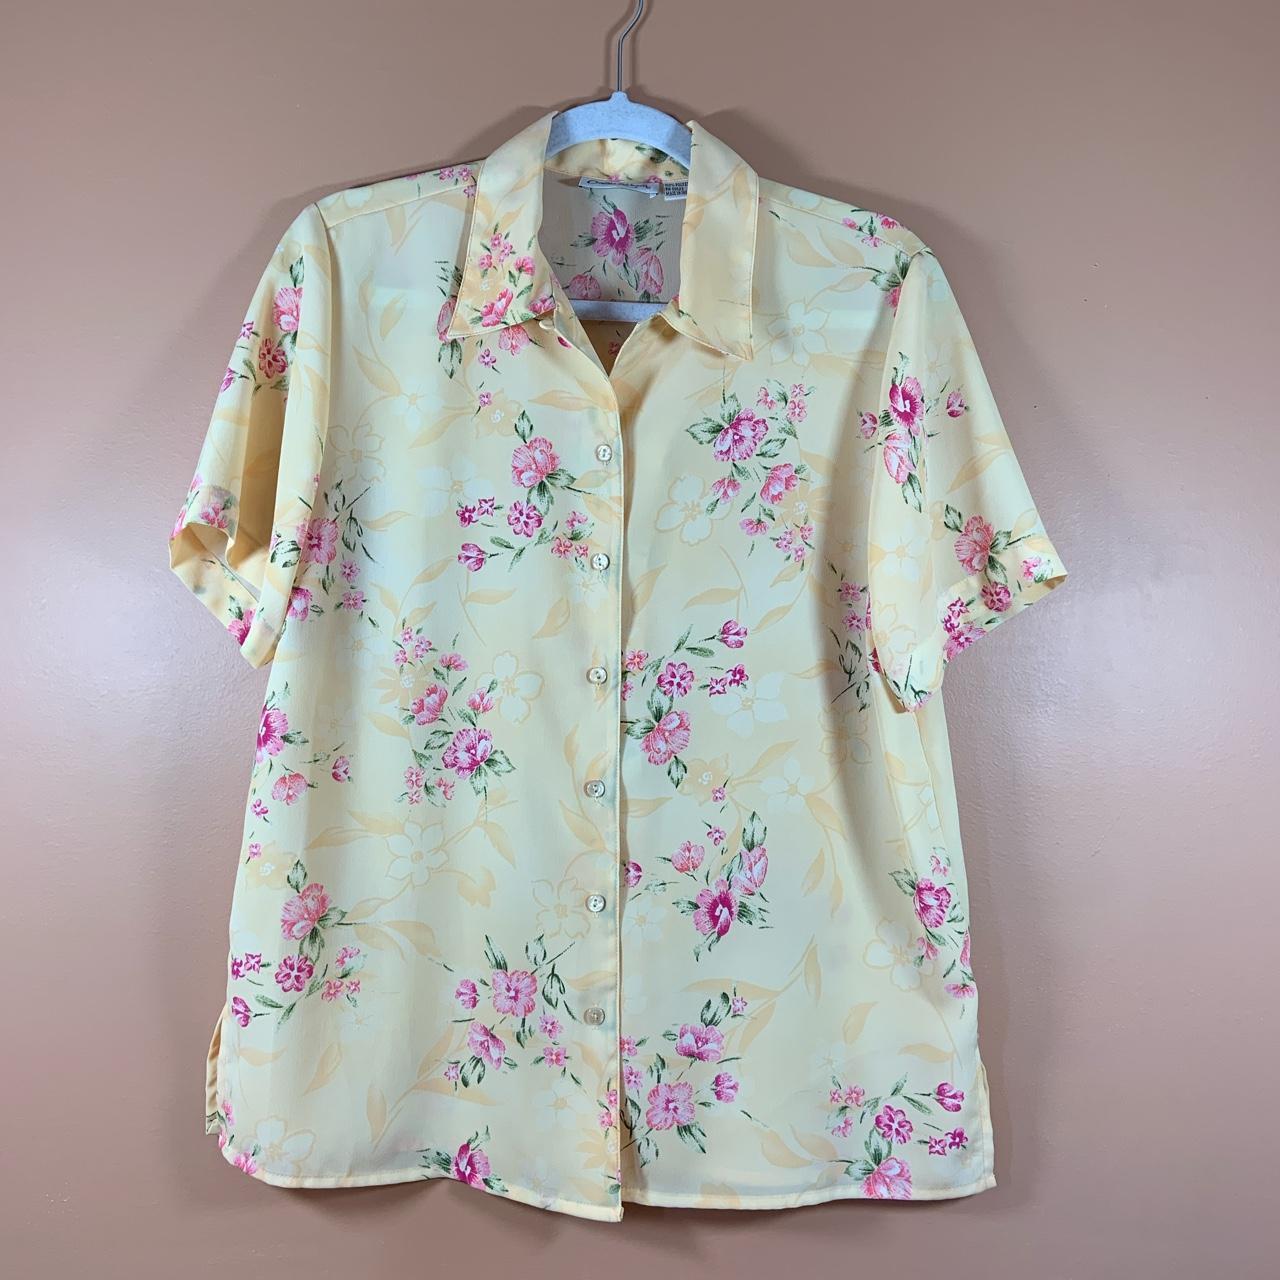 Vintage Claudia Richards Floral Button Up Shirt... - Depop